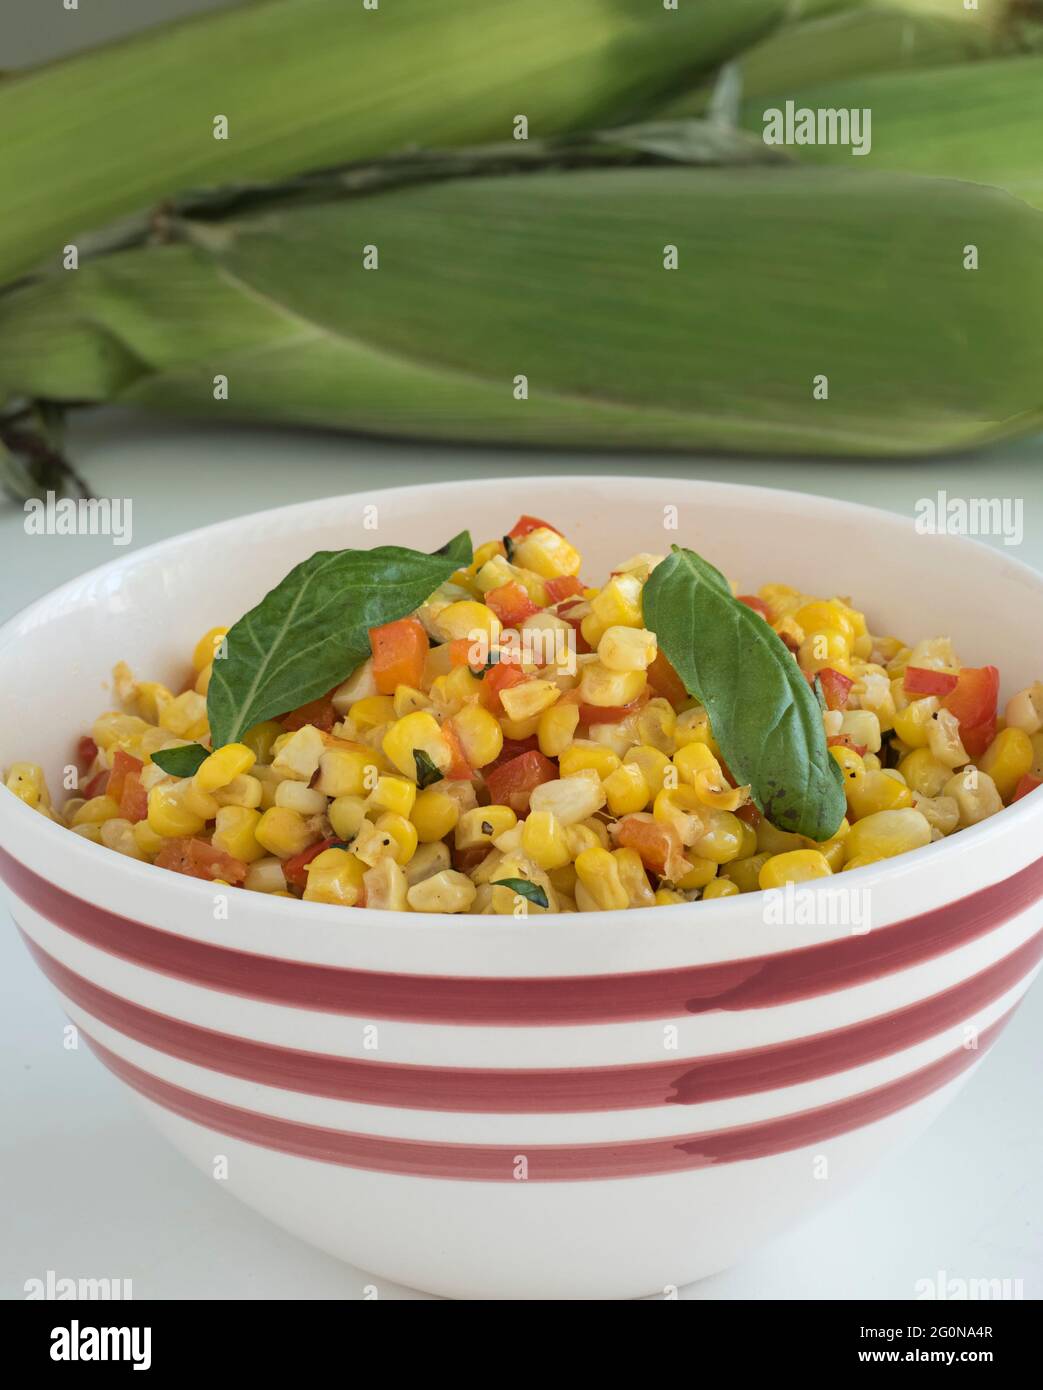 Un bol de service à rayures rouges et blanches rempli d'une casserole de maïs et de poivre rouge se trouve sur une table devant une pile de maïs frais non décortiqué Banque D'Images